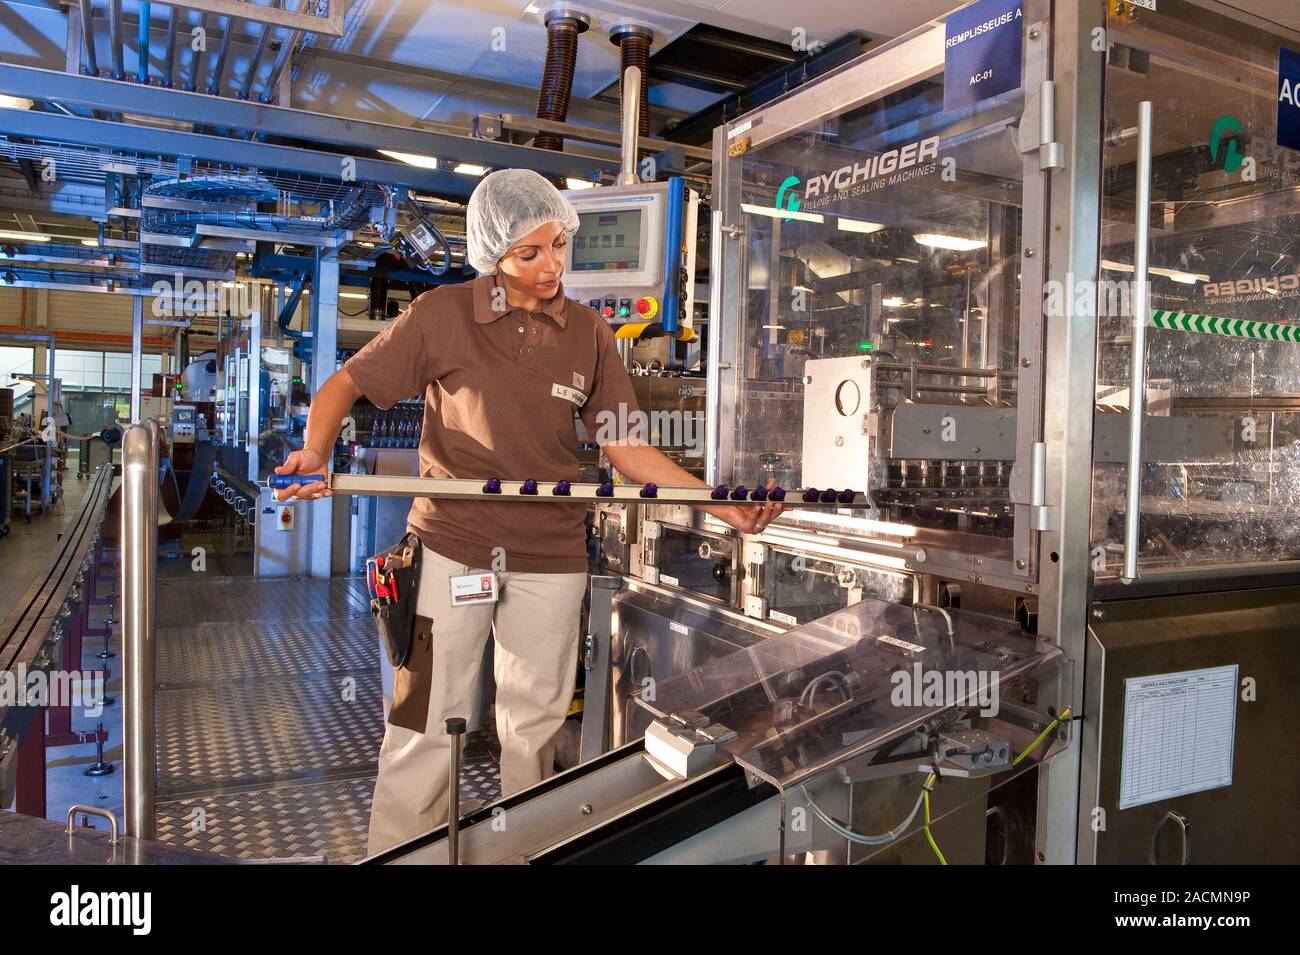 Fábrica de dosis de café. Dosis de café Nespresso manipulación obrero en  una fábrica. Las vainas son cápsulas llenas de café molido y se utilizan en  Nespre especializada Fotografía de stock -